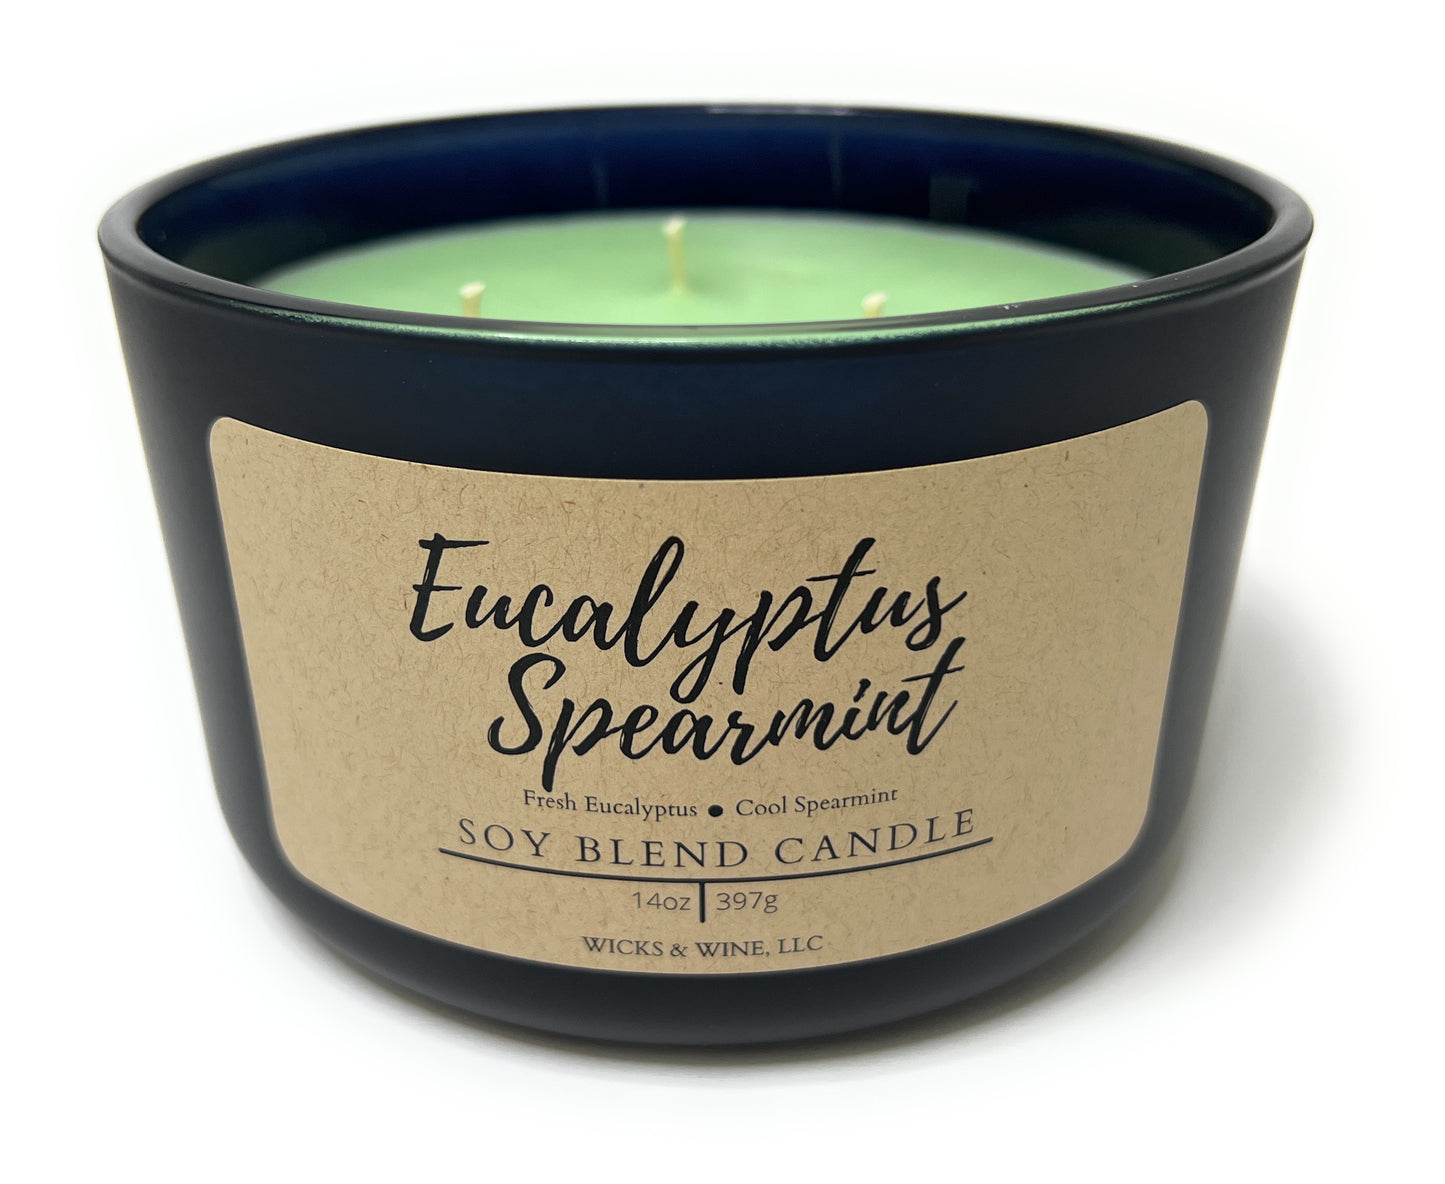 Eucalyptus Spearmint 3 Wick Candle